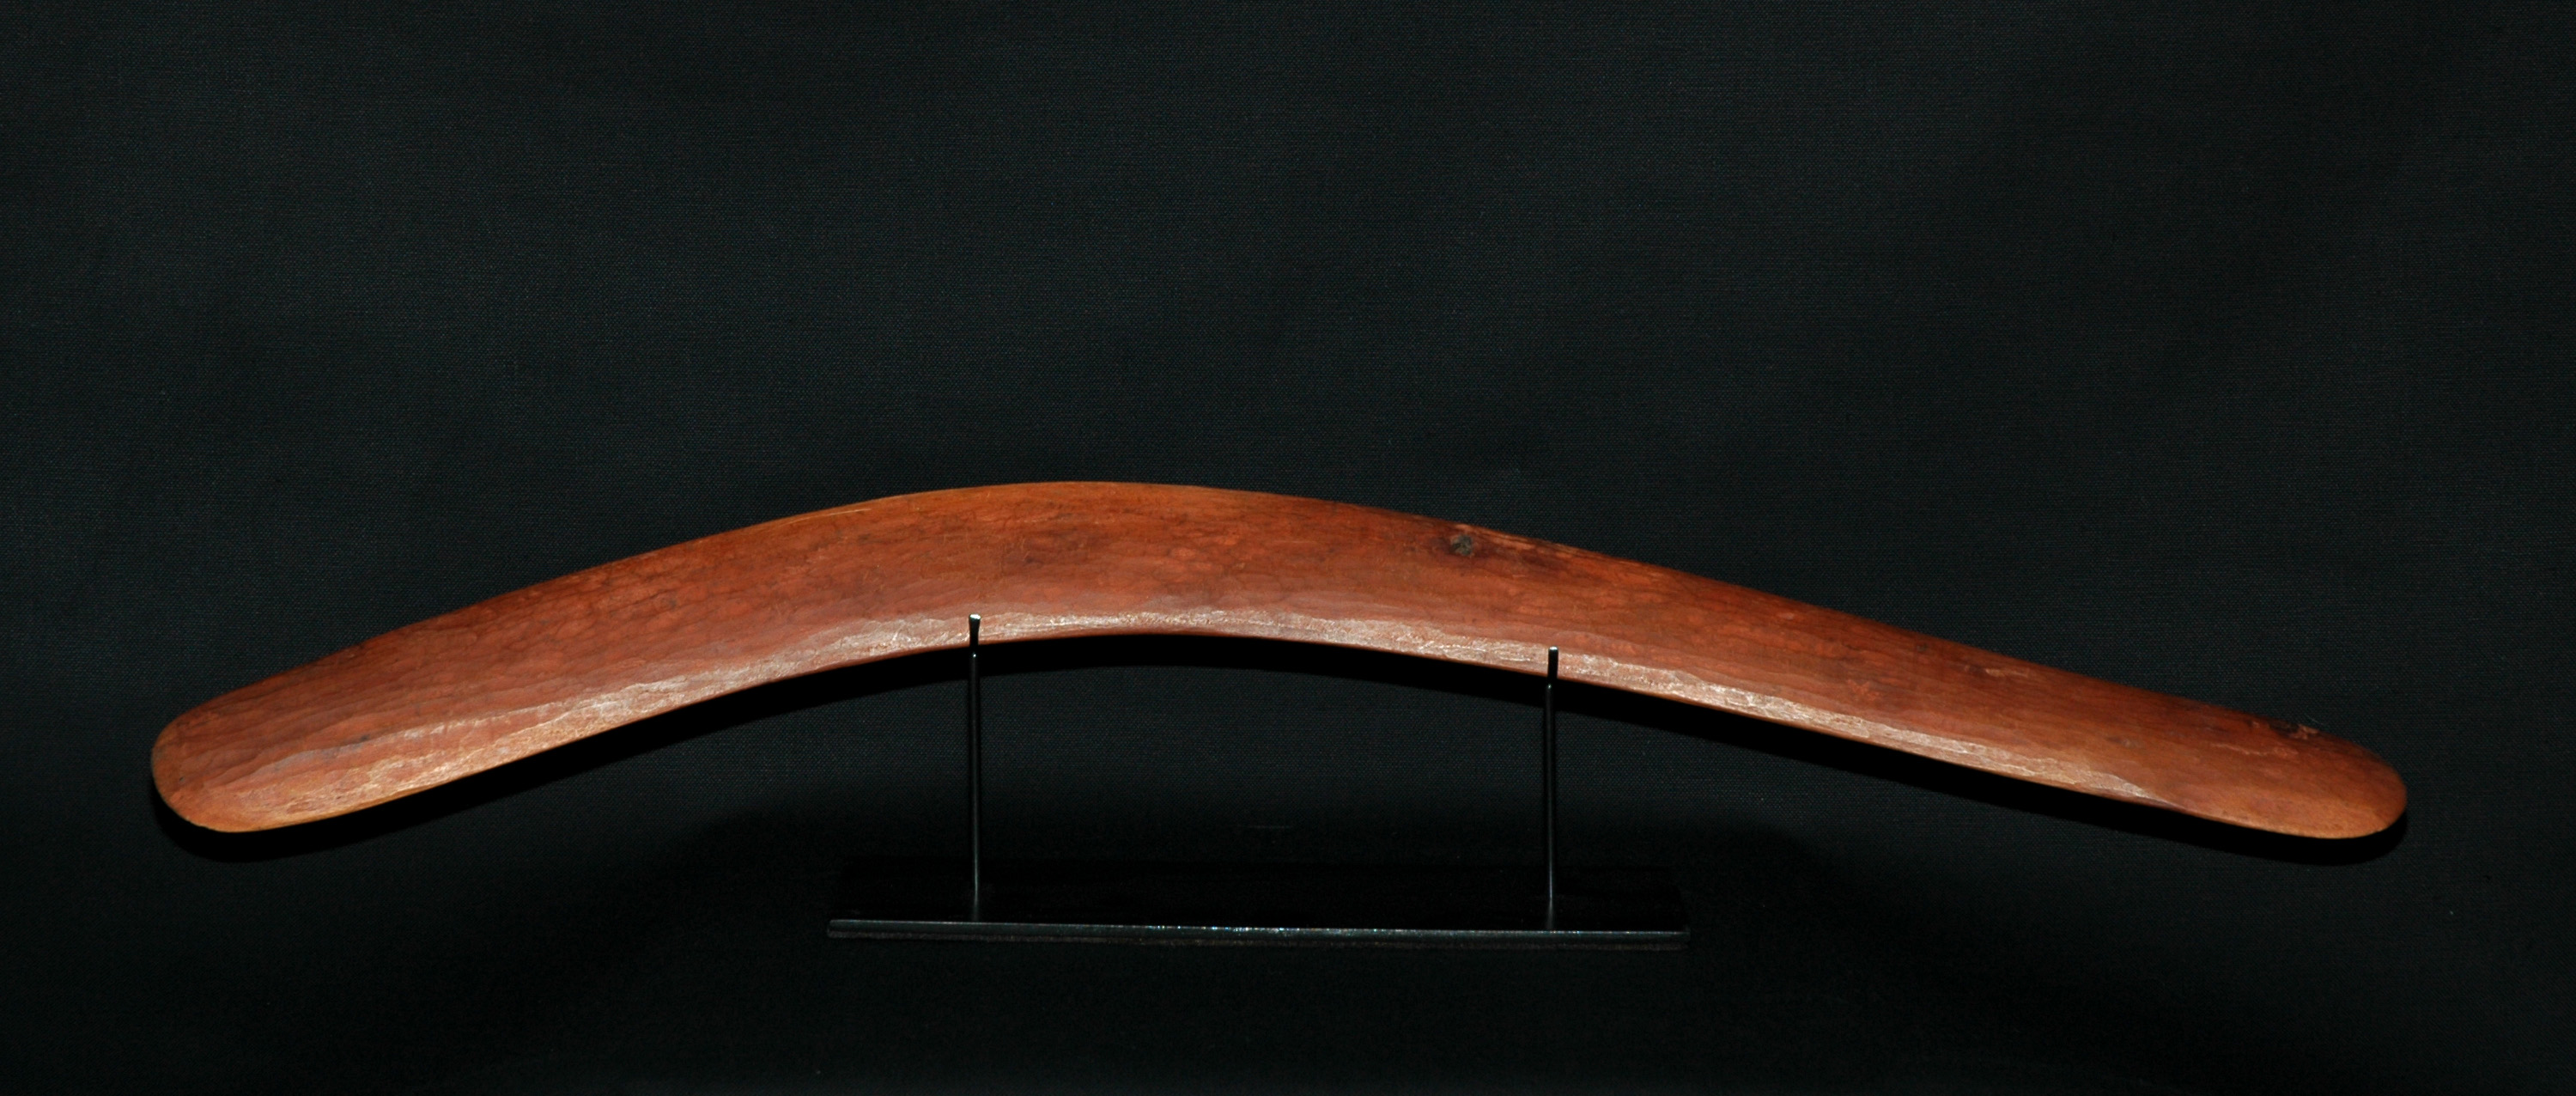 'Boomerang3' - Wood, Aged patina - Physical NFT